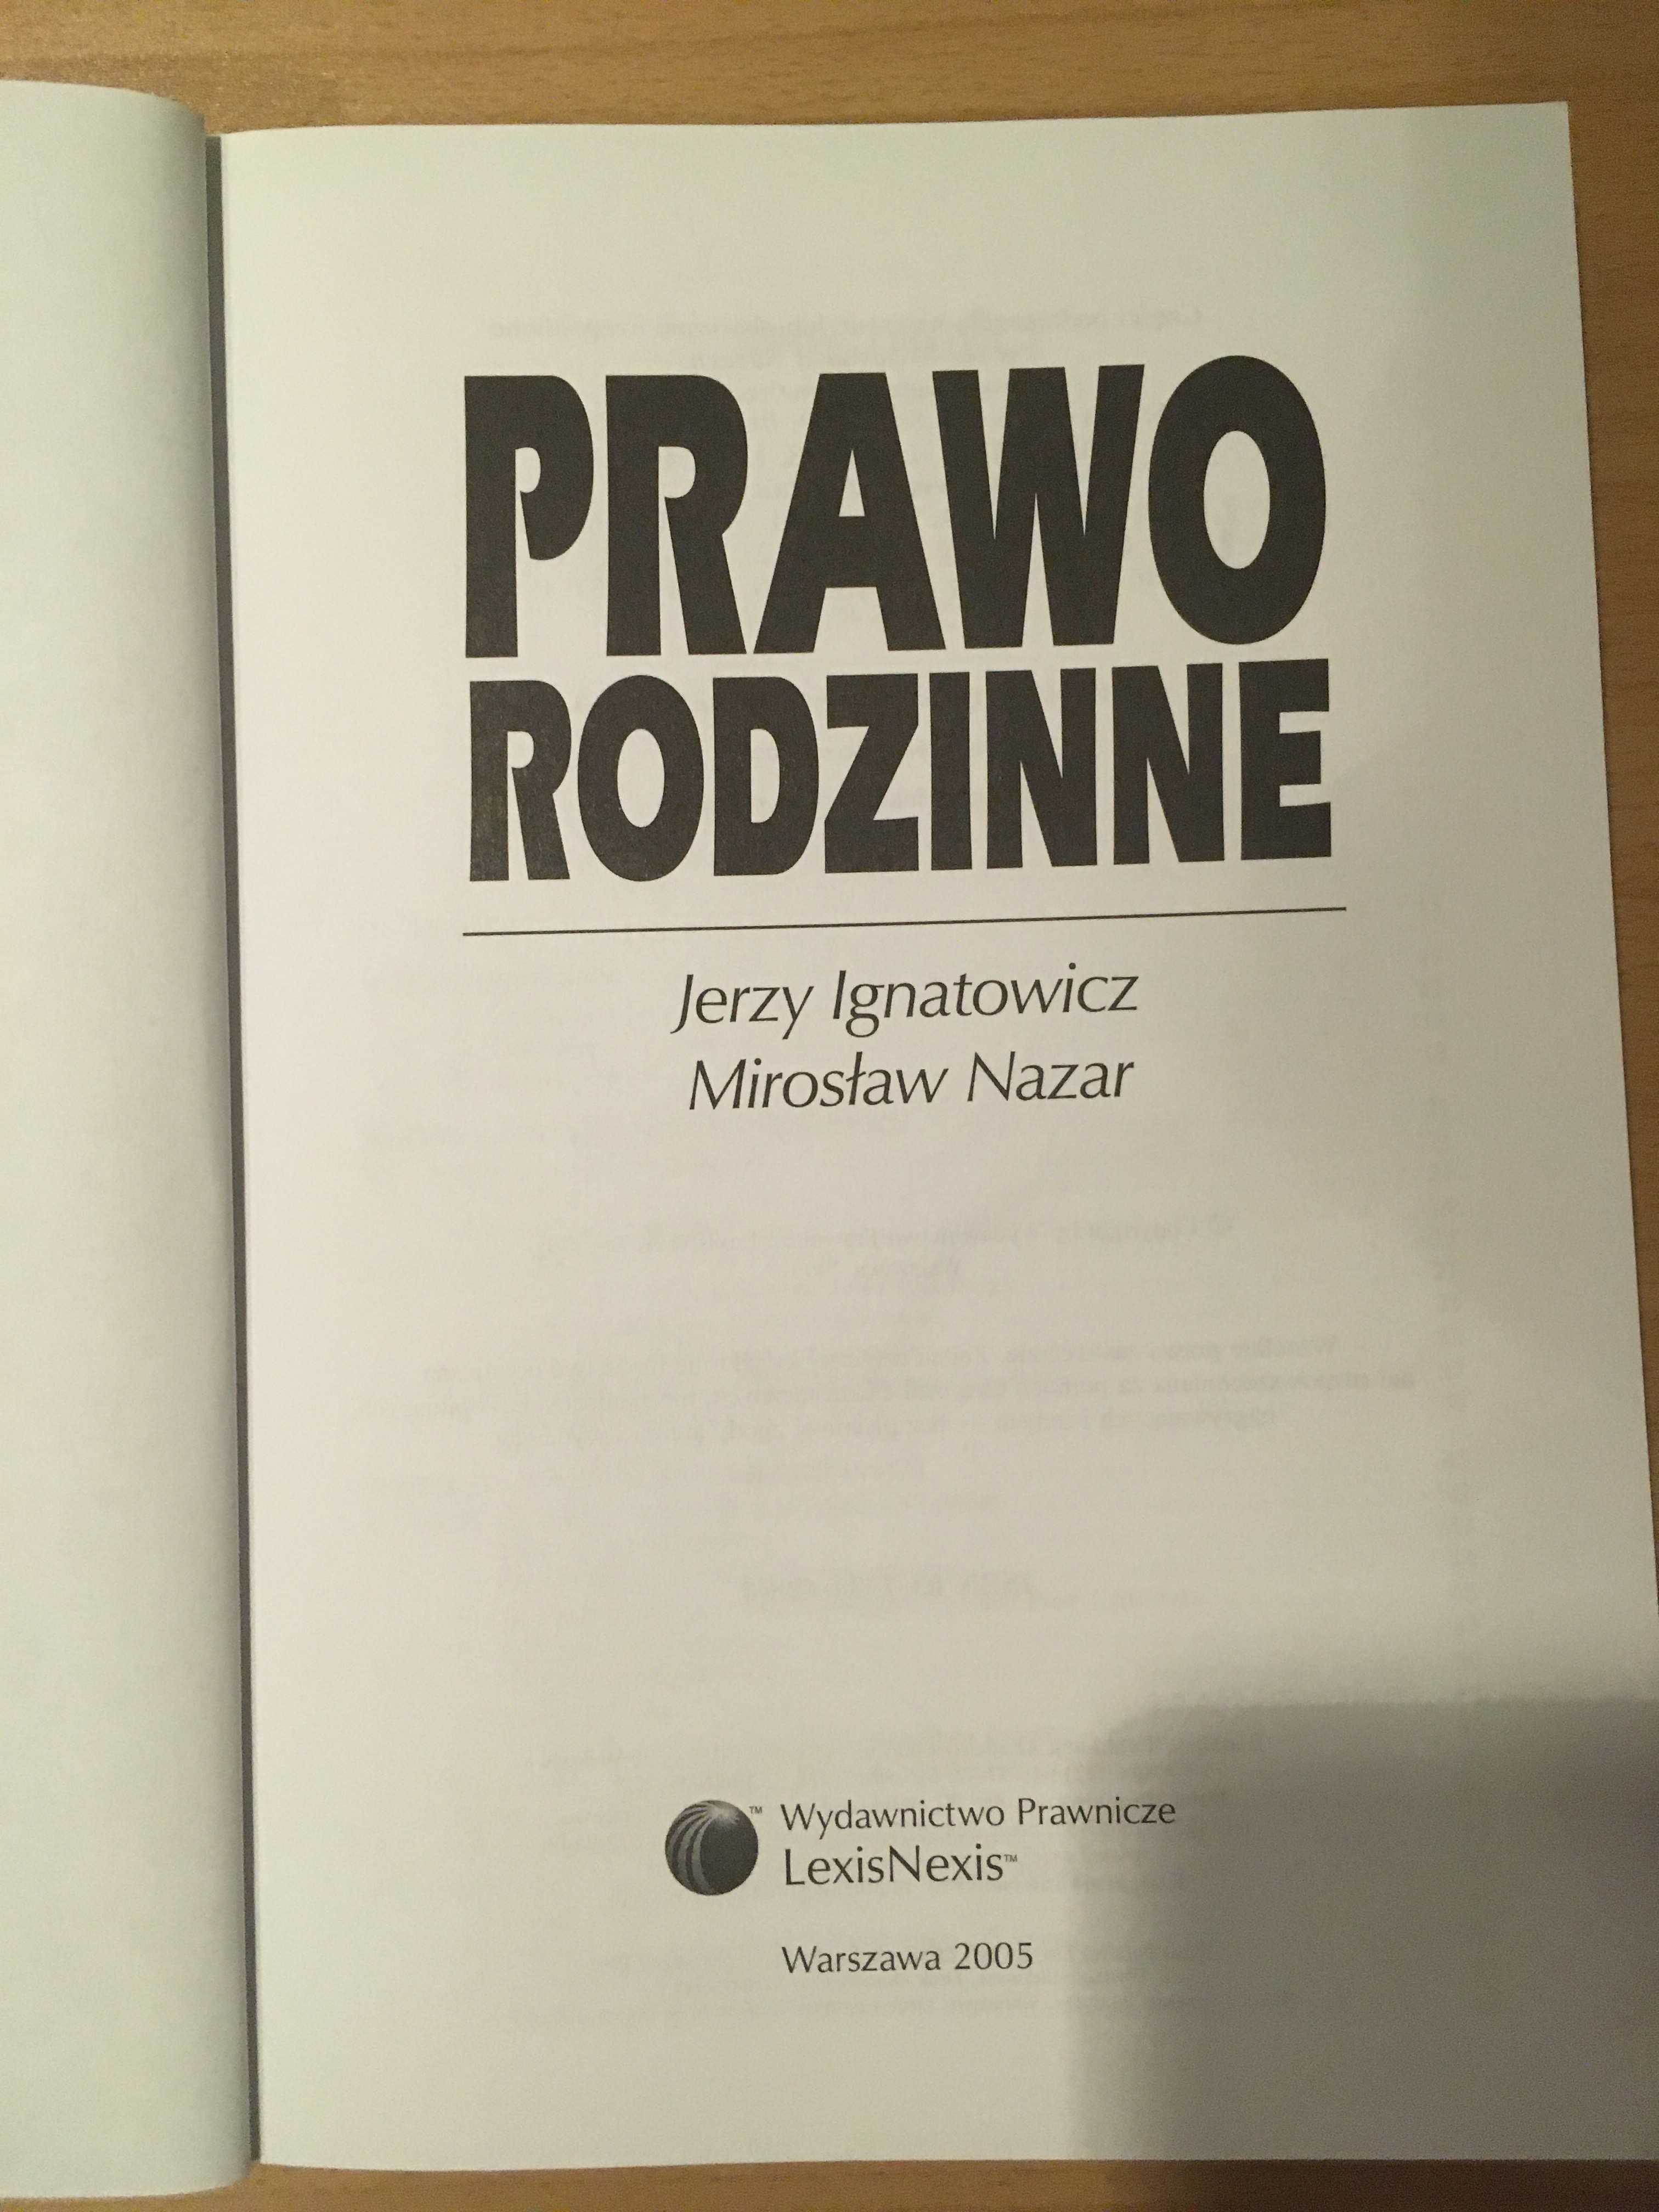 Prawo rodzinne, Jerzy Ignatowicz, Mirosław Nazar